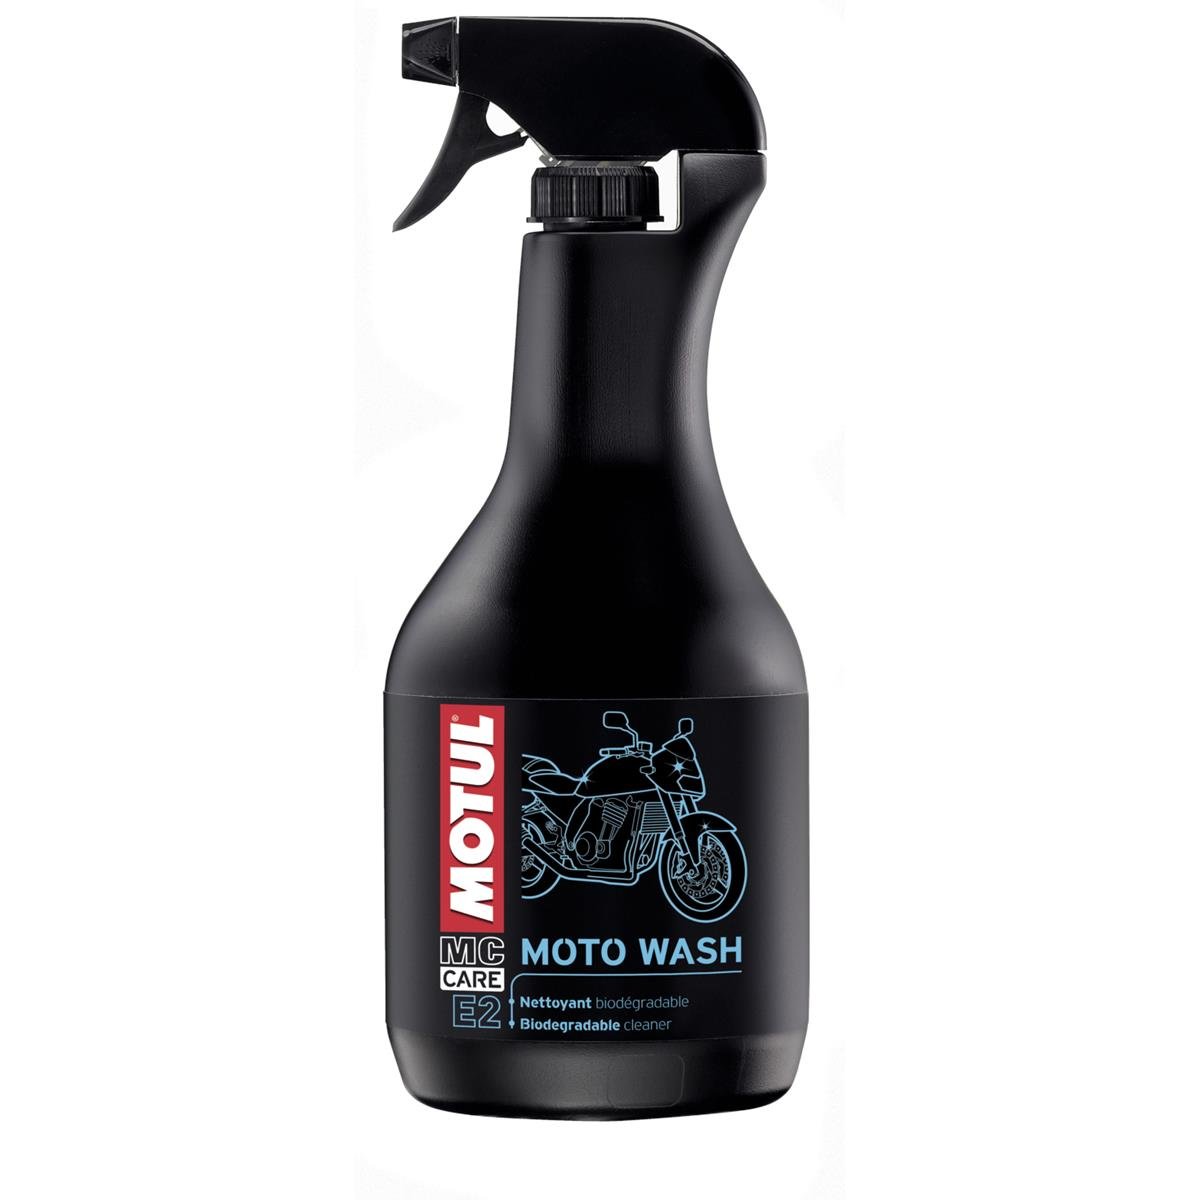 Motul Detergente Bicicletta Moto Wash E2 MC Care, 1 L